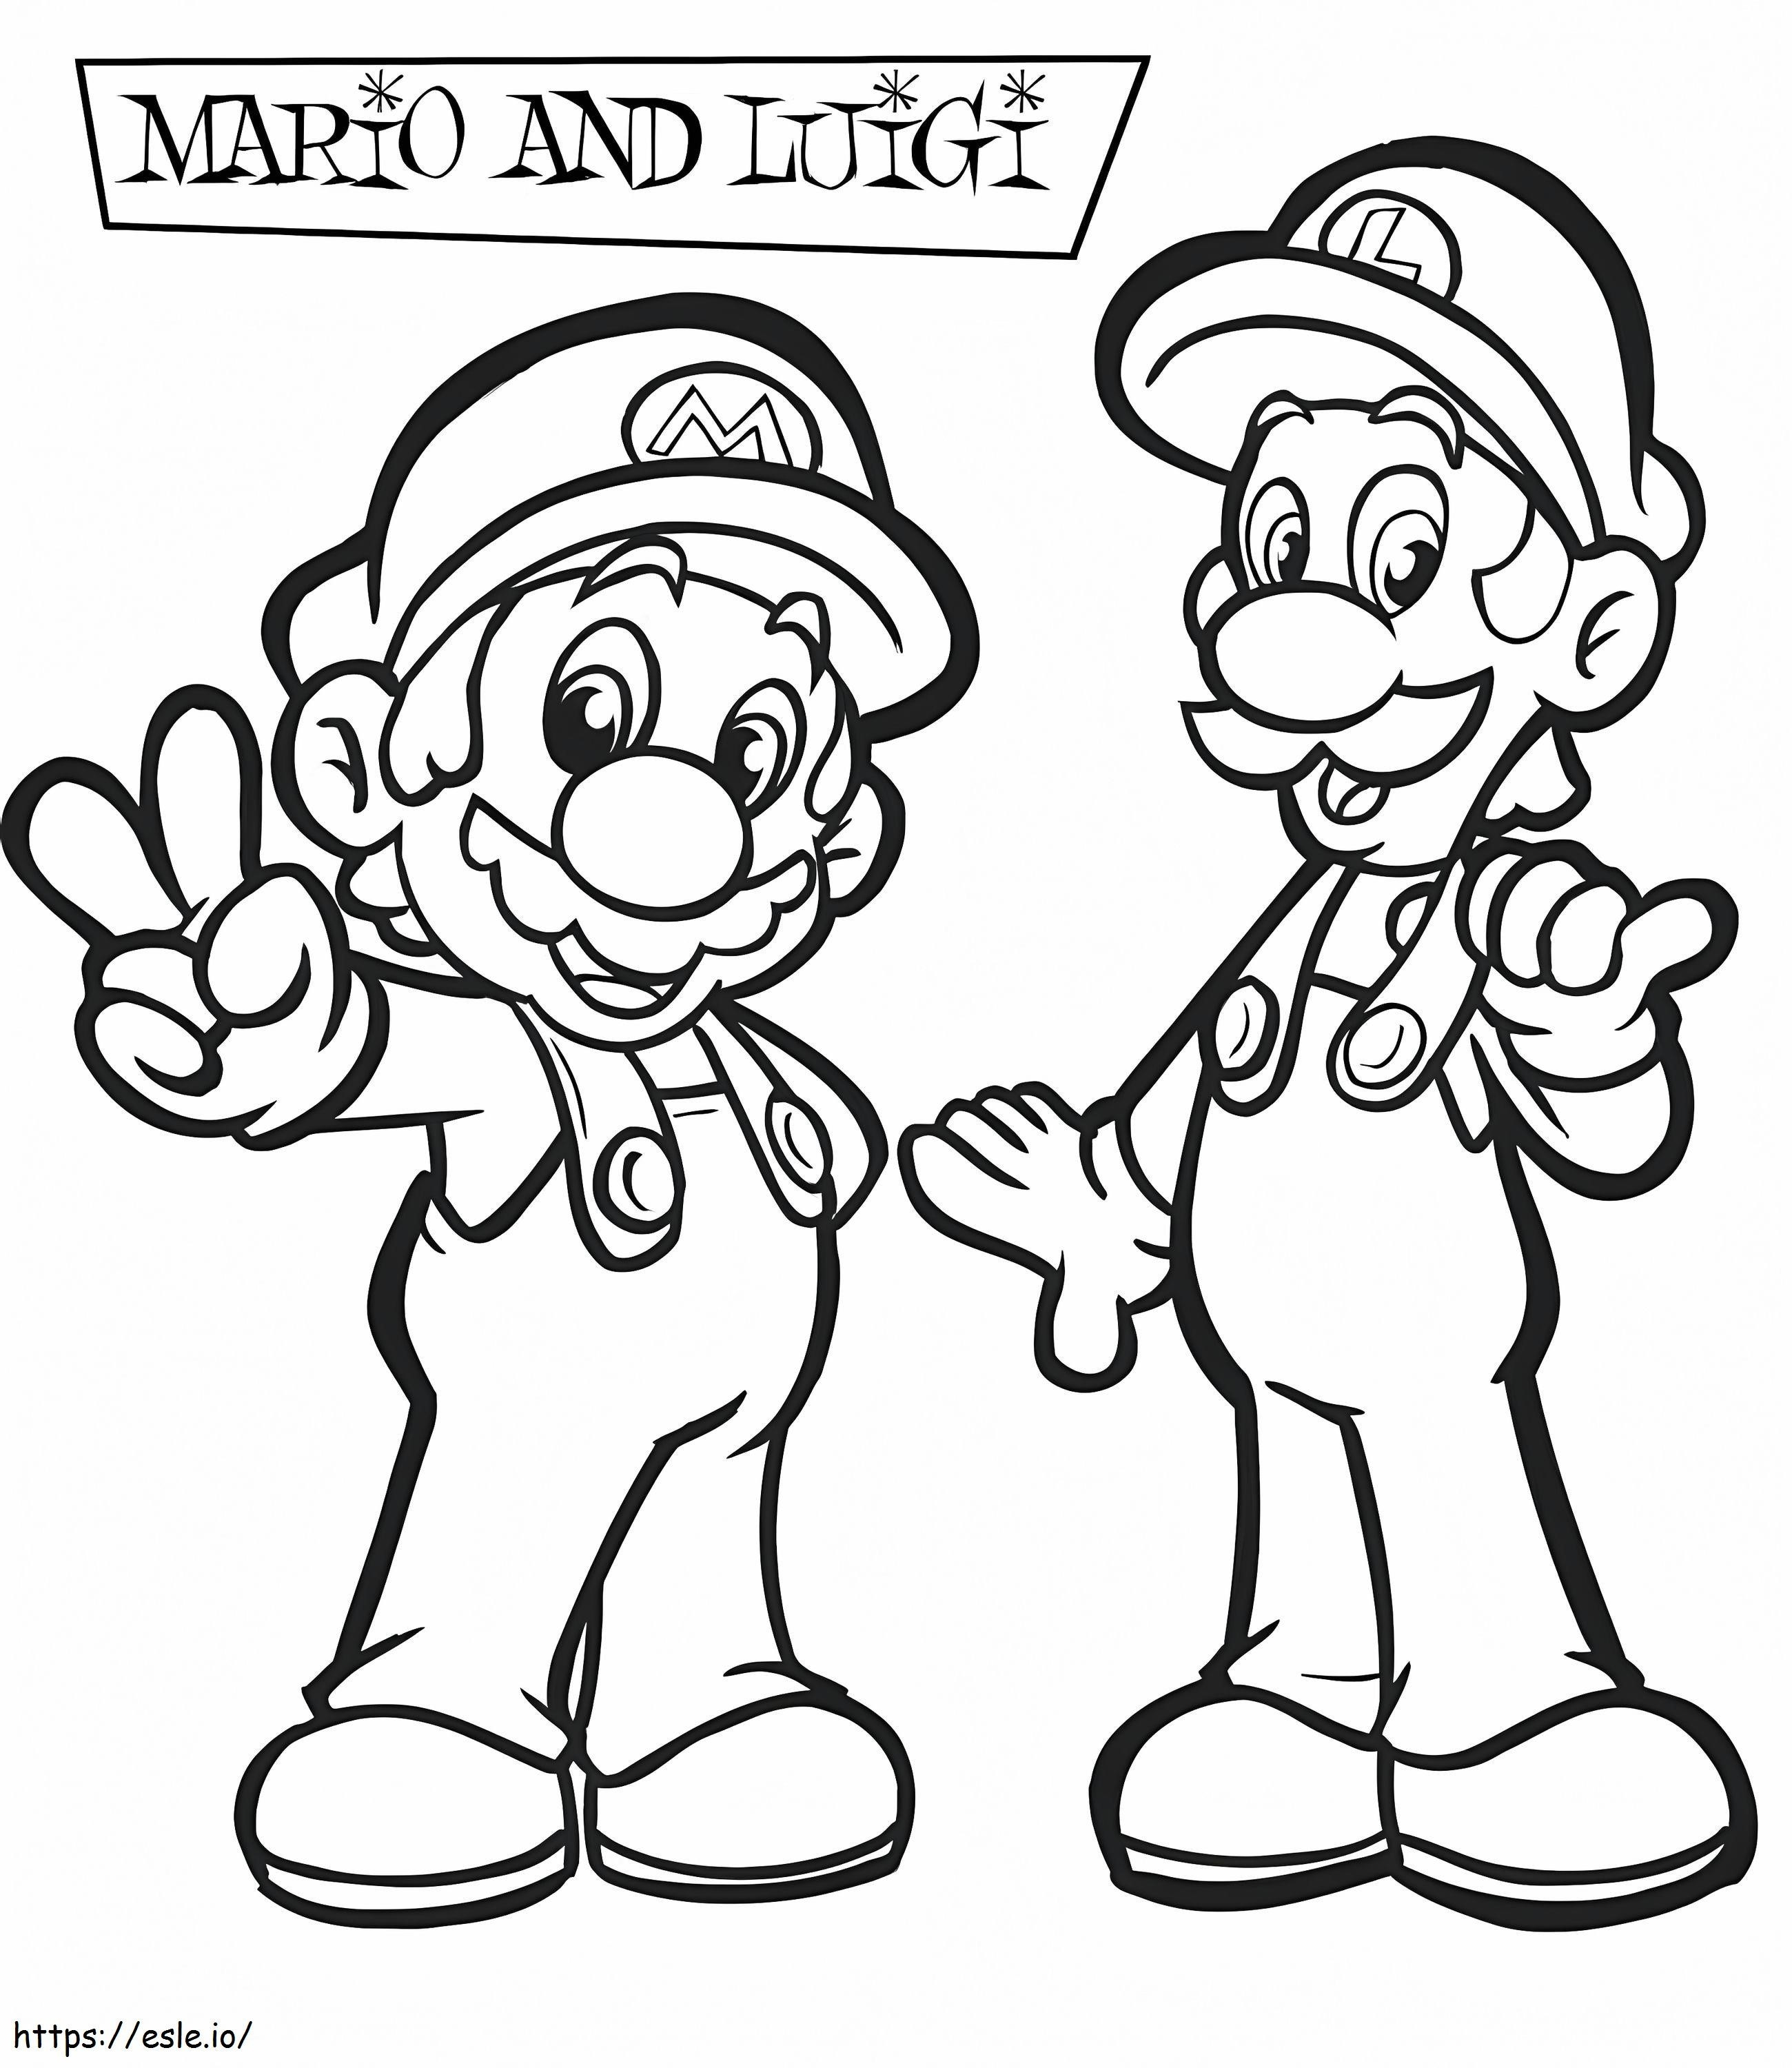 Funny Luigi And Mario coloring page